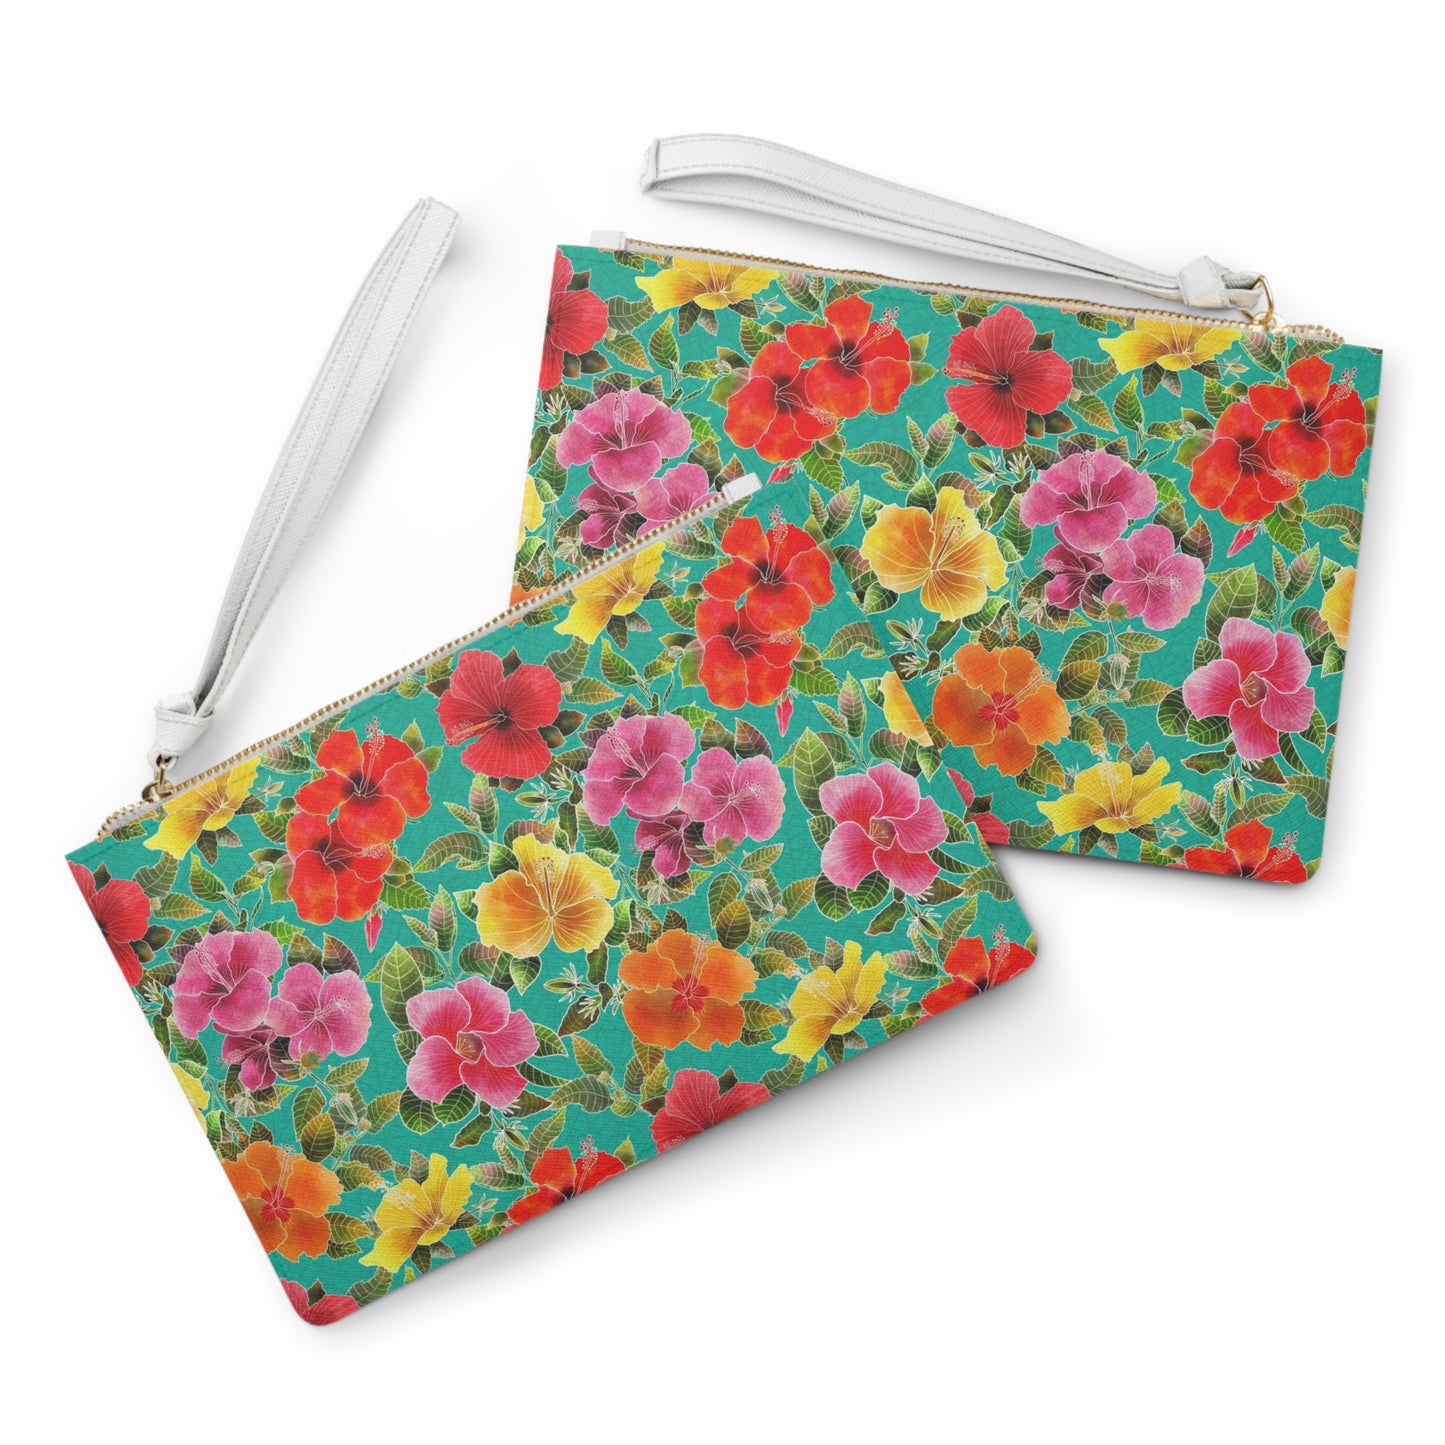 Hibiscus Garden Clutch Bag